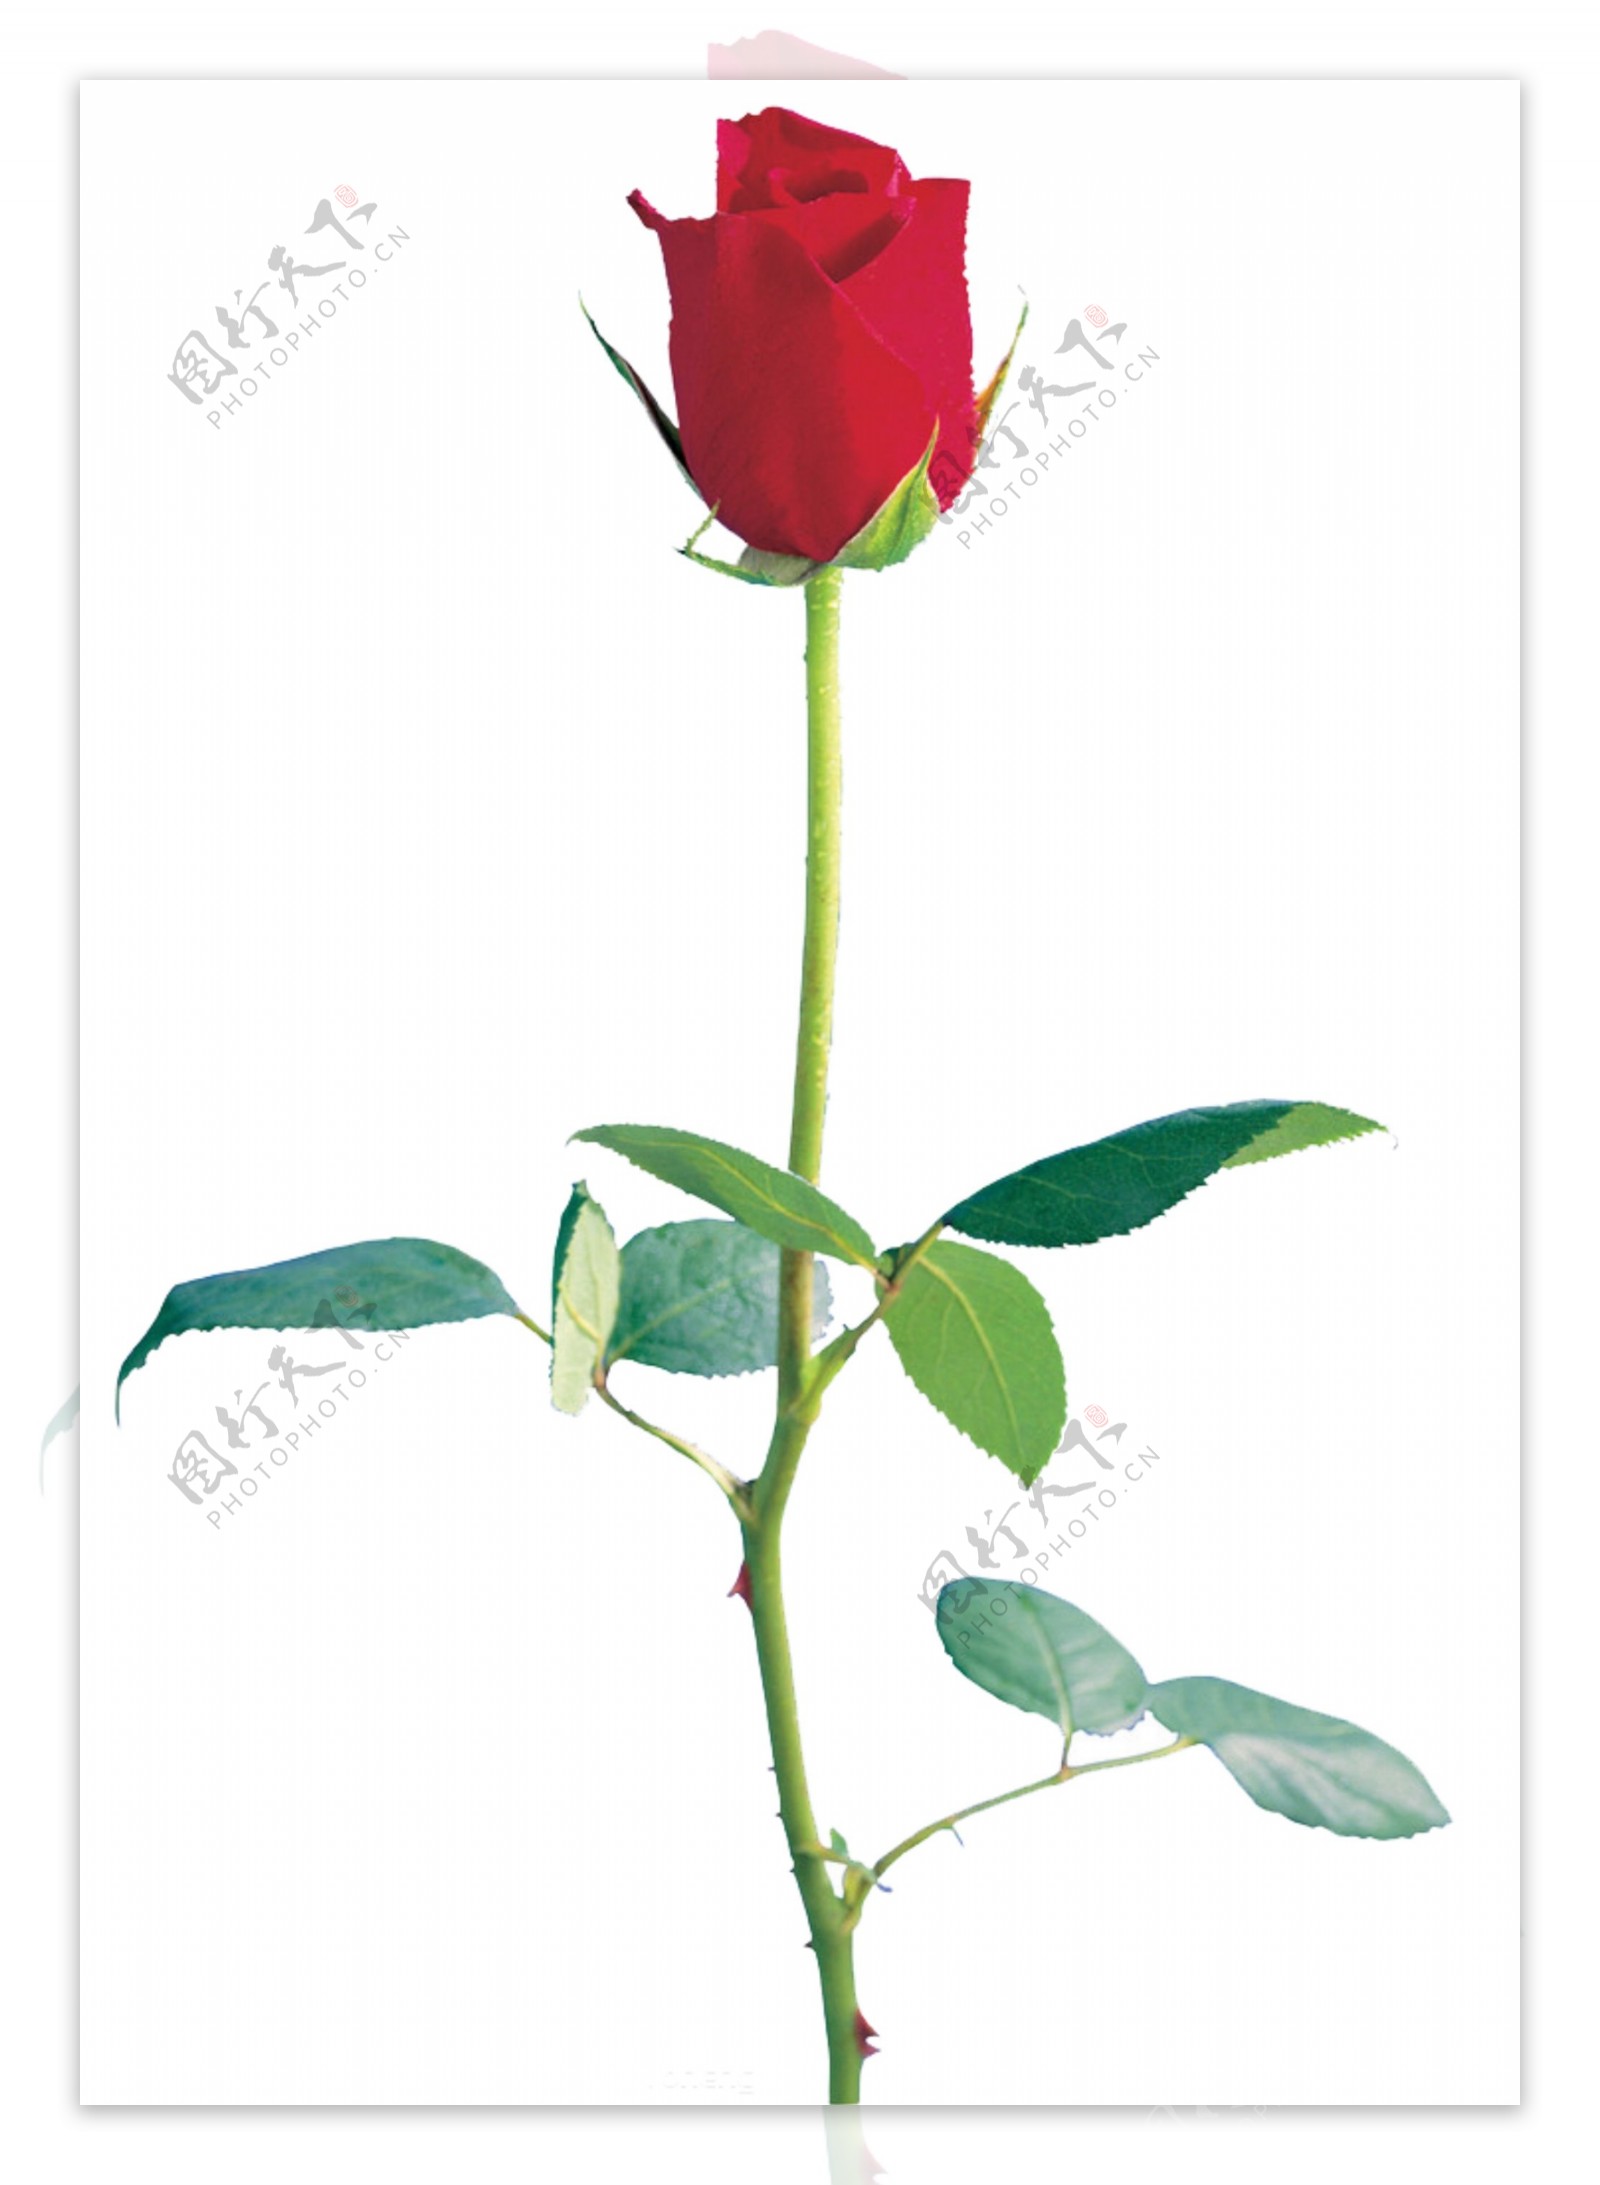 一支红玫瑰花图片大全 - 【花卉百科网】